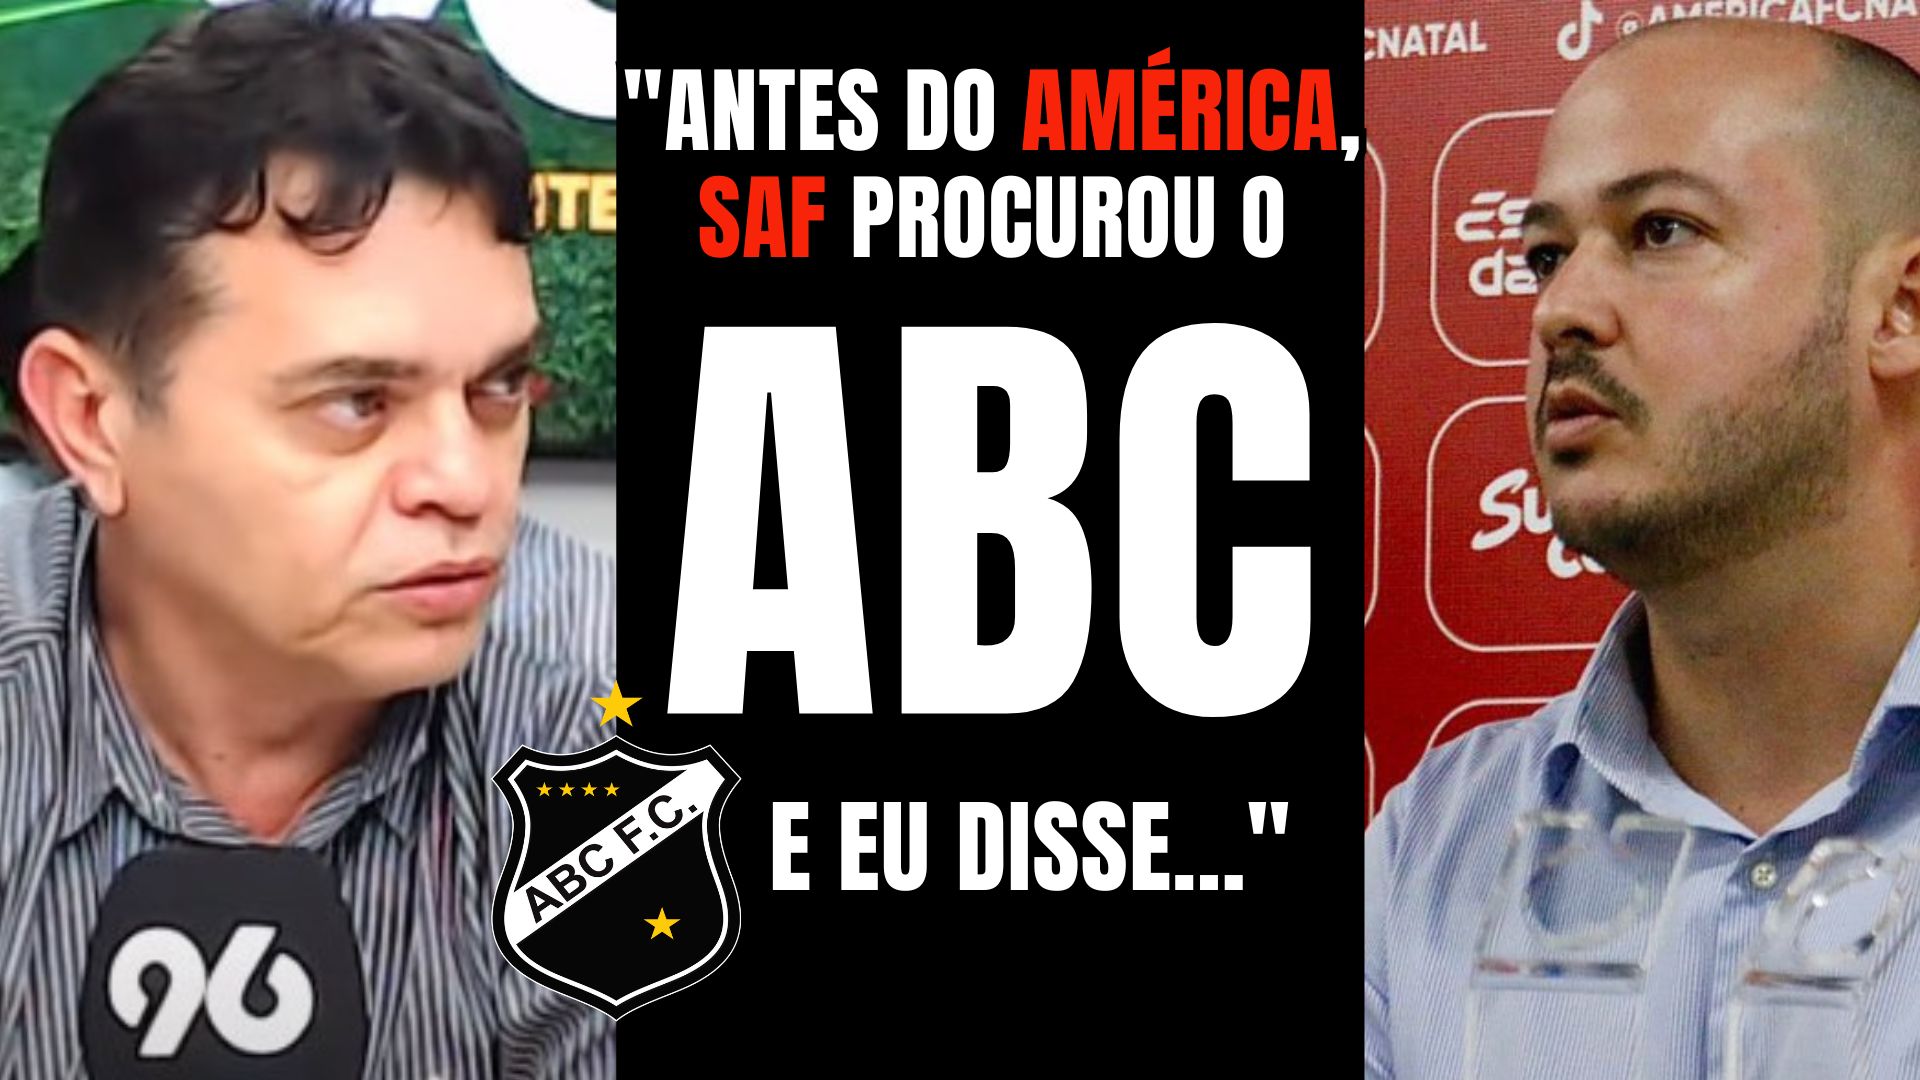 [VIDEO] Presidente Bira Marques revela: "Antes de fechar com América, SAF procurou o ABC"